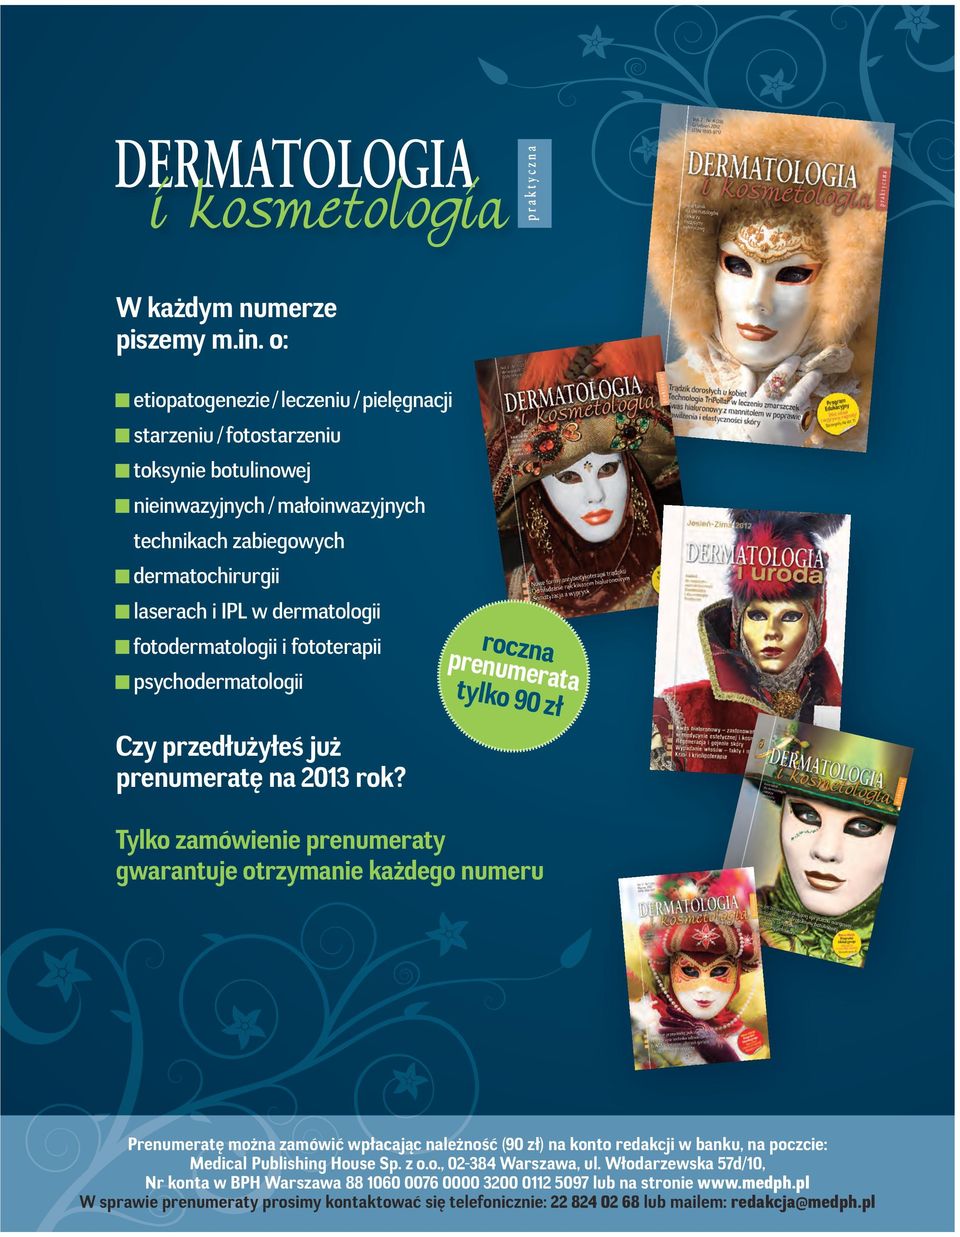 fotodermatologii i fototerapii psychodermatologii Czy przedłużyłeś już prenumeratę na 2013 rok?